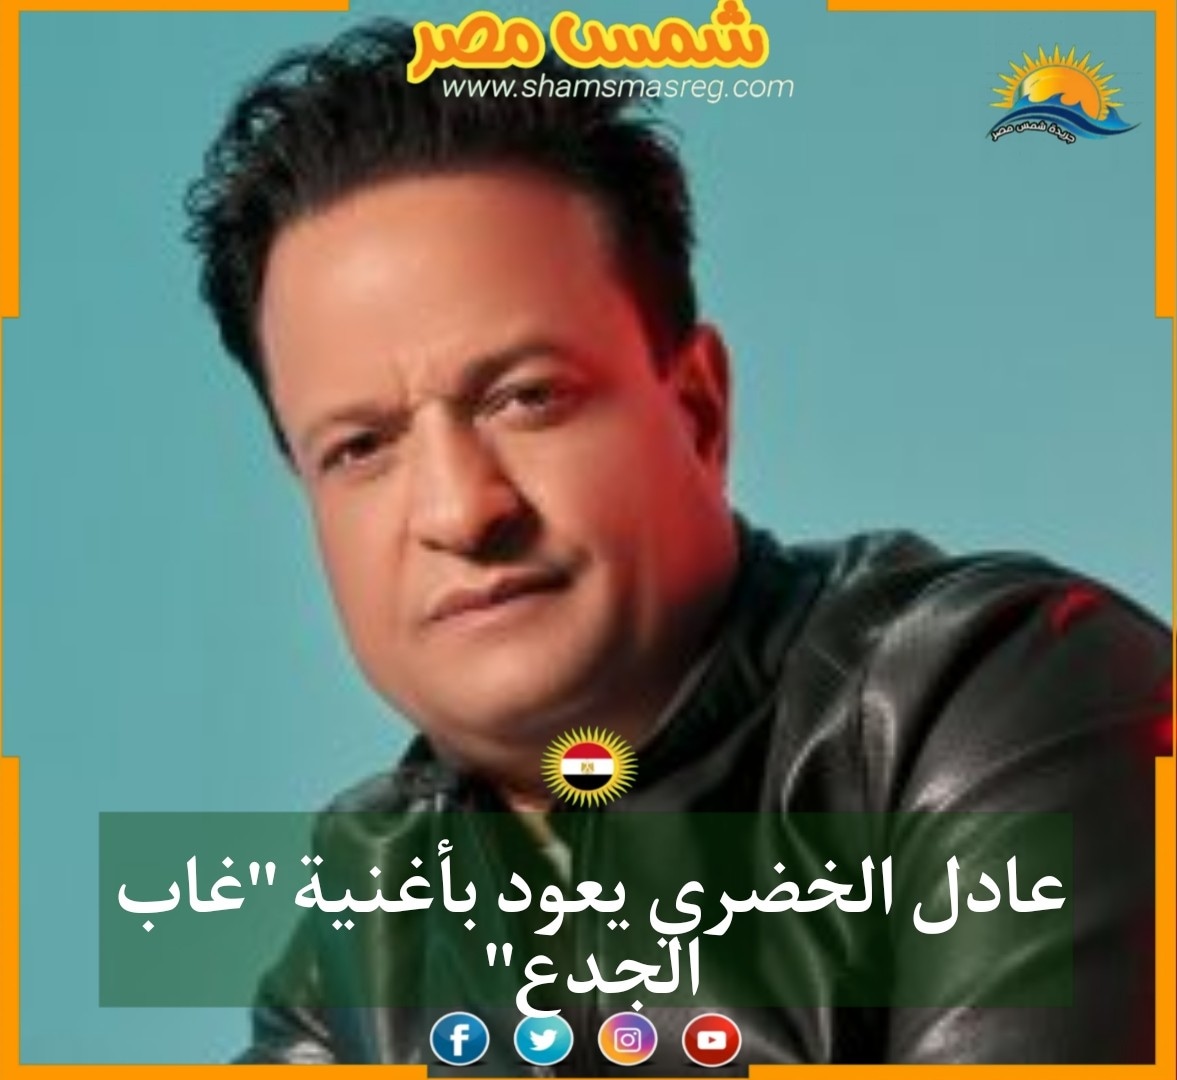 عادل الخضري يعود بأغنية "غاب الجدع"